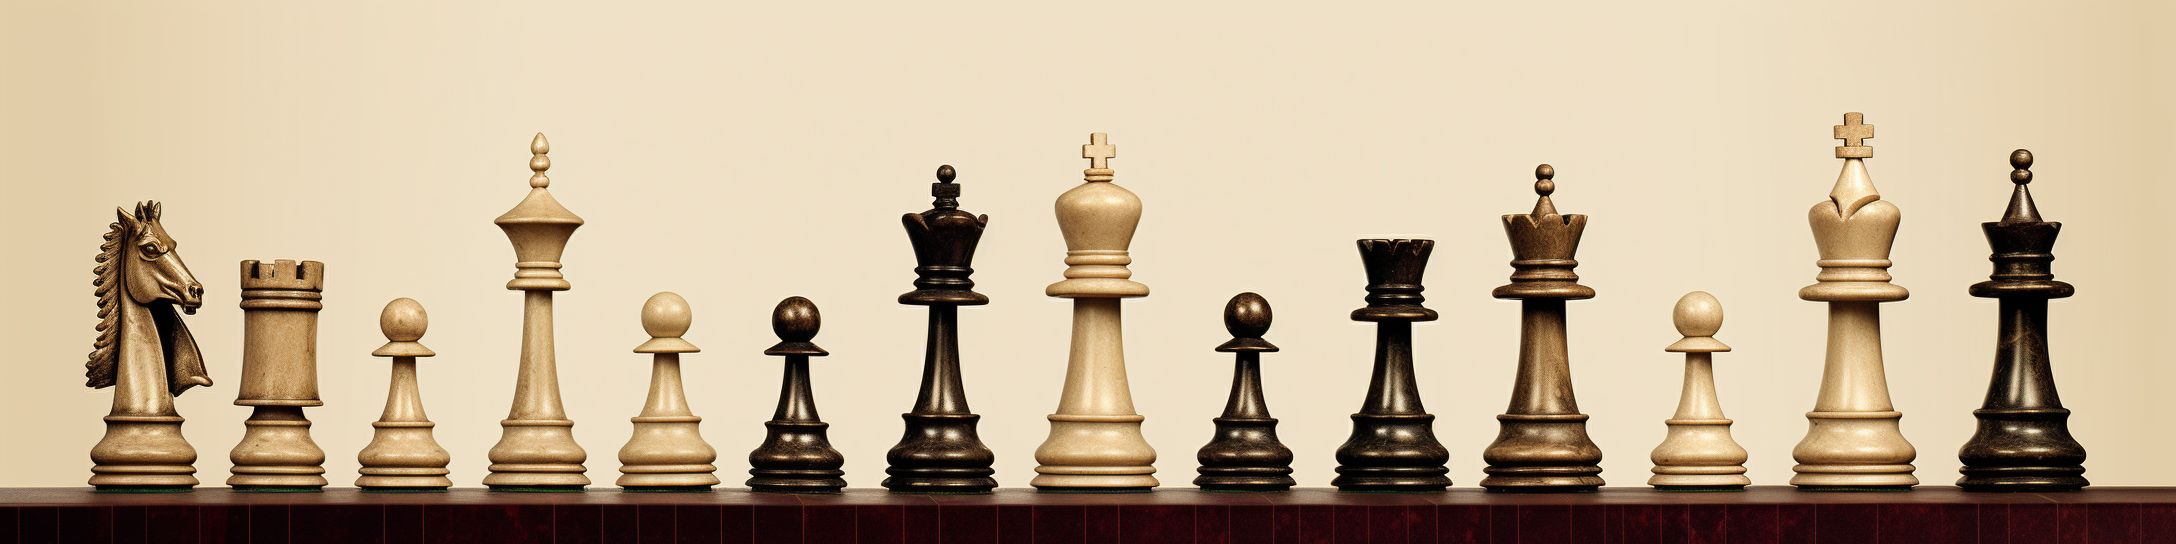 Les éléments à considérer pour choisir la taille du jeu d’échecs